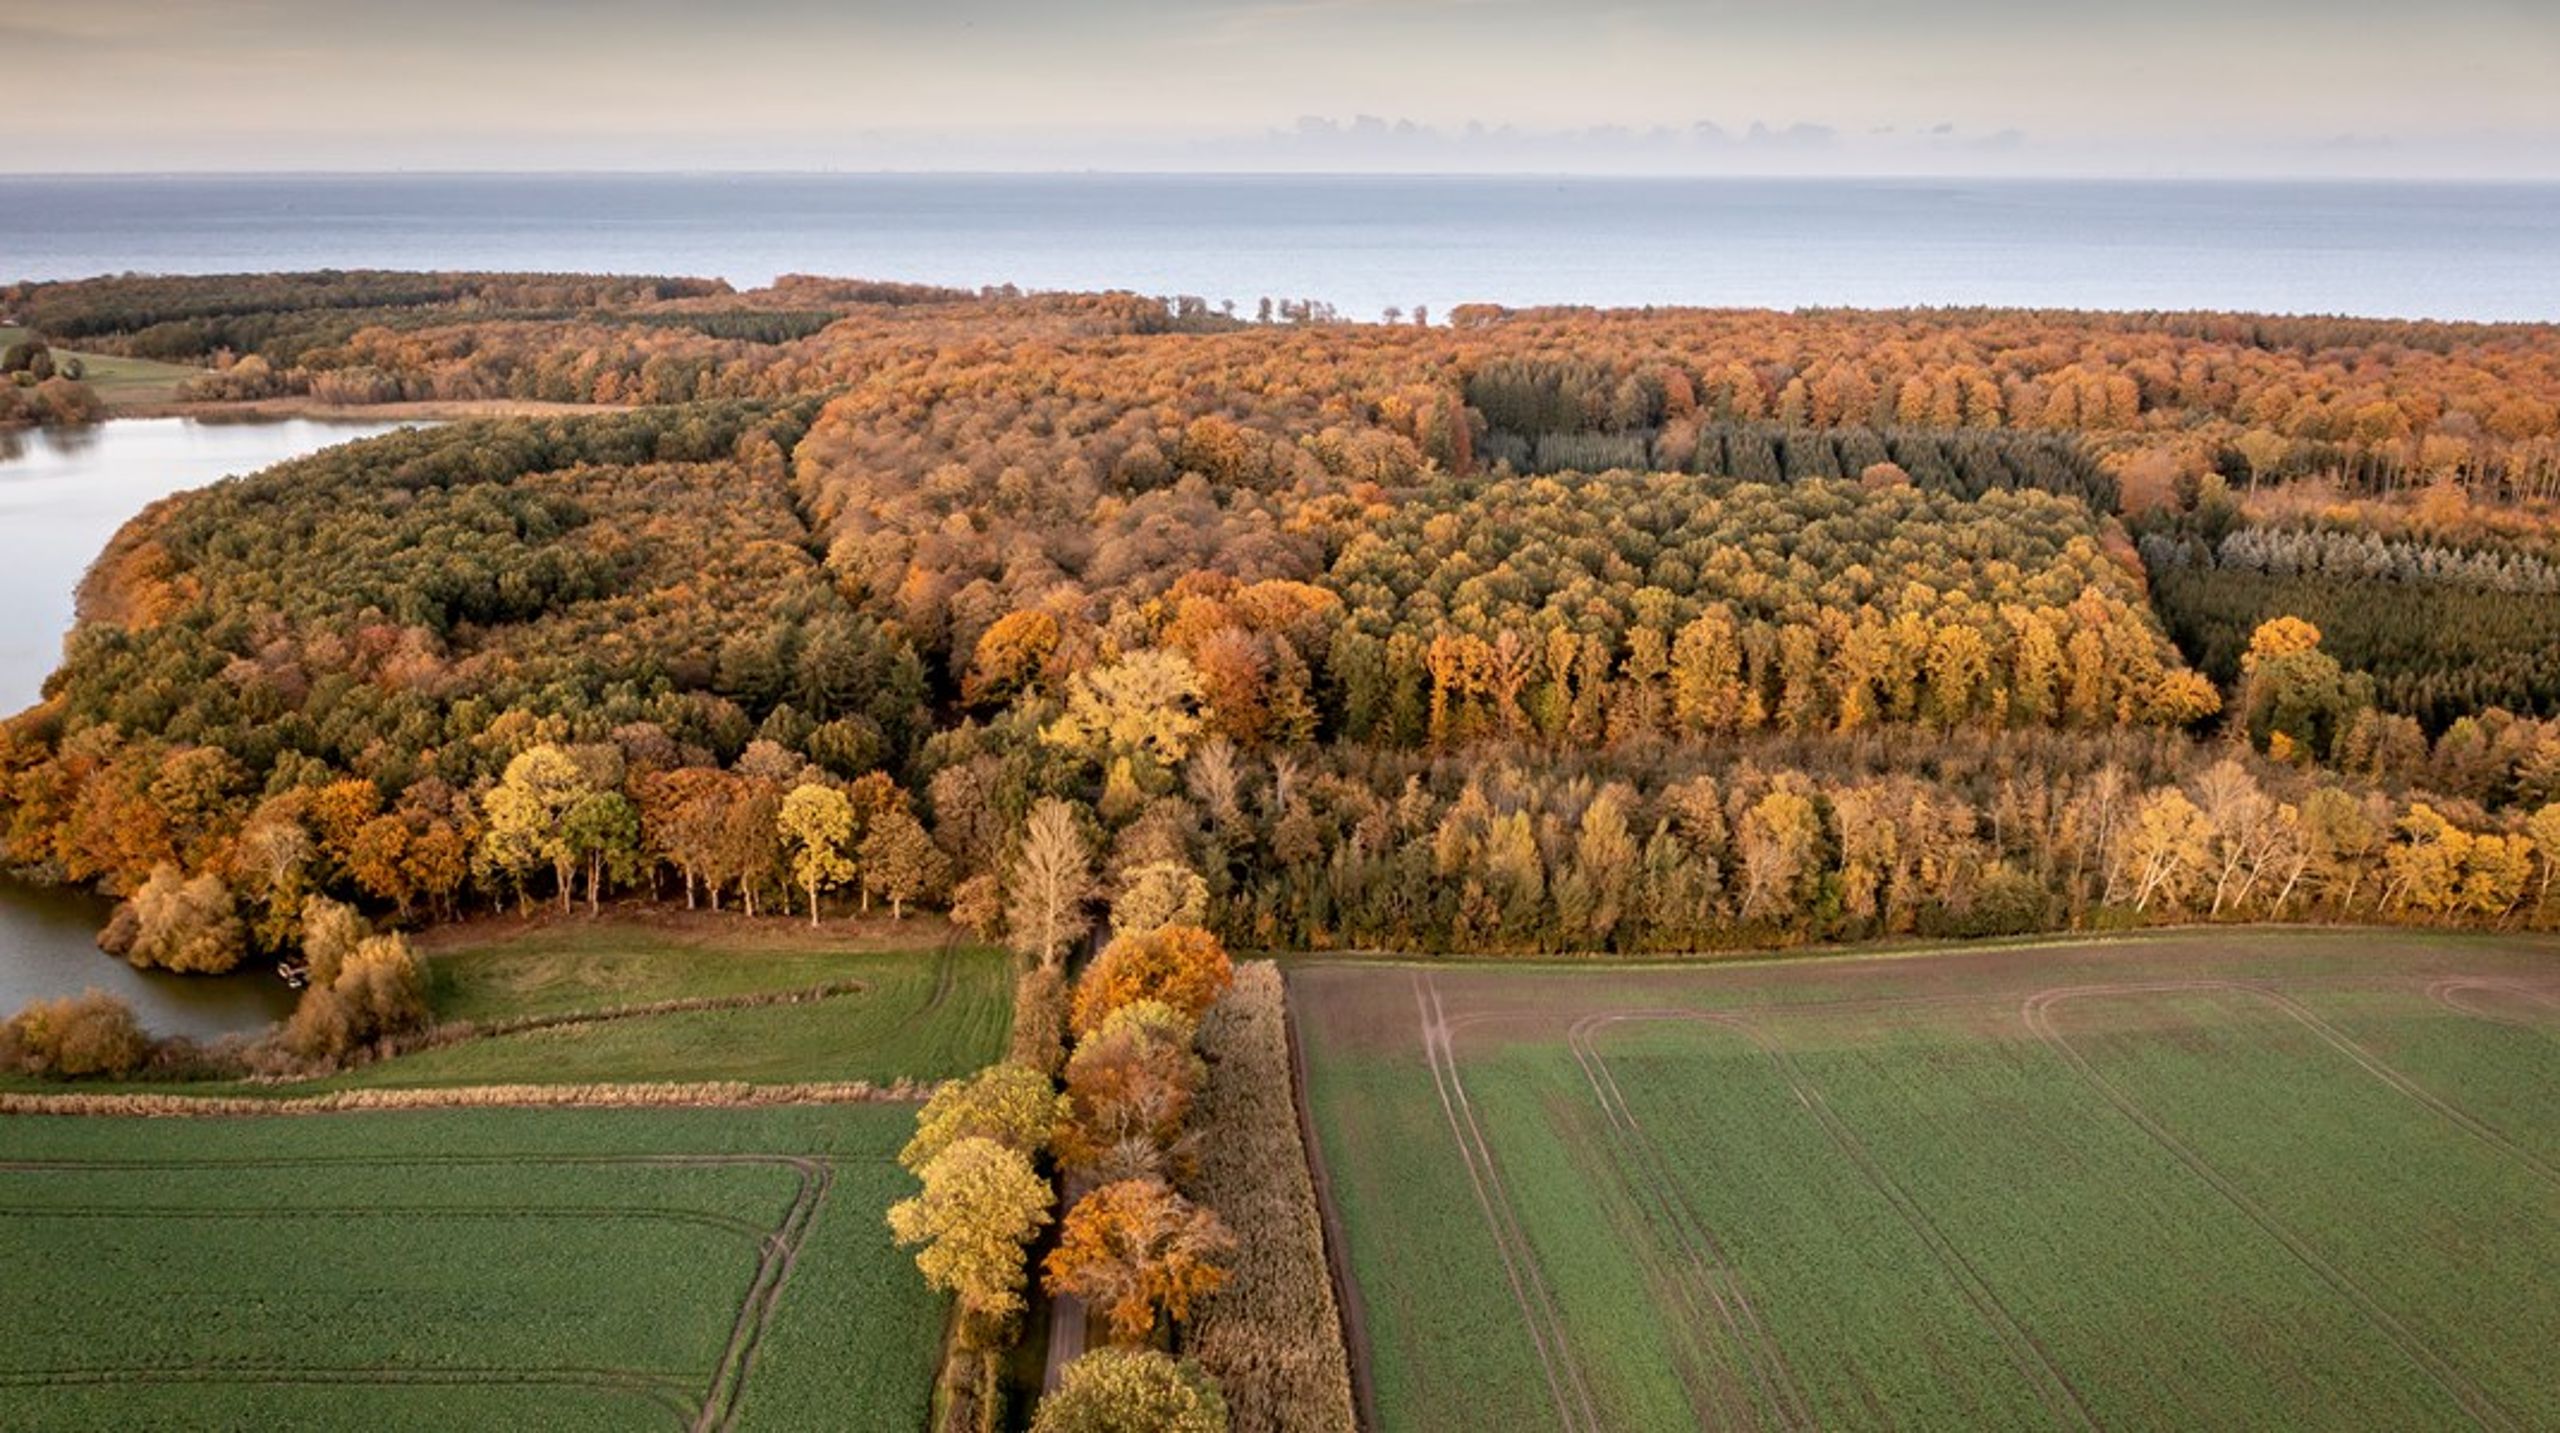 Klimaskovfonden bidrager til at nå Folketingets ambitiøse CO2-reduktionsmål gennem klimaprojekter i Danmark, med etablering af&nbsp;skov og udtager kulstofrige lavbundsarealer.